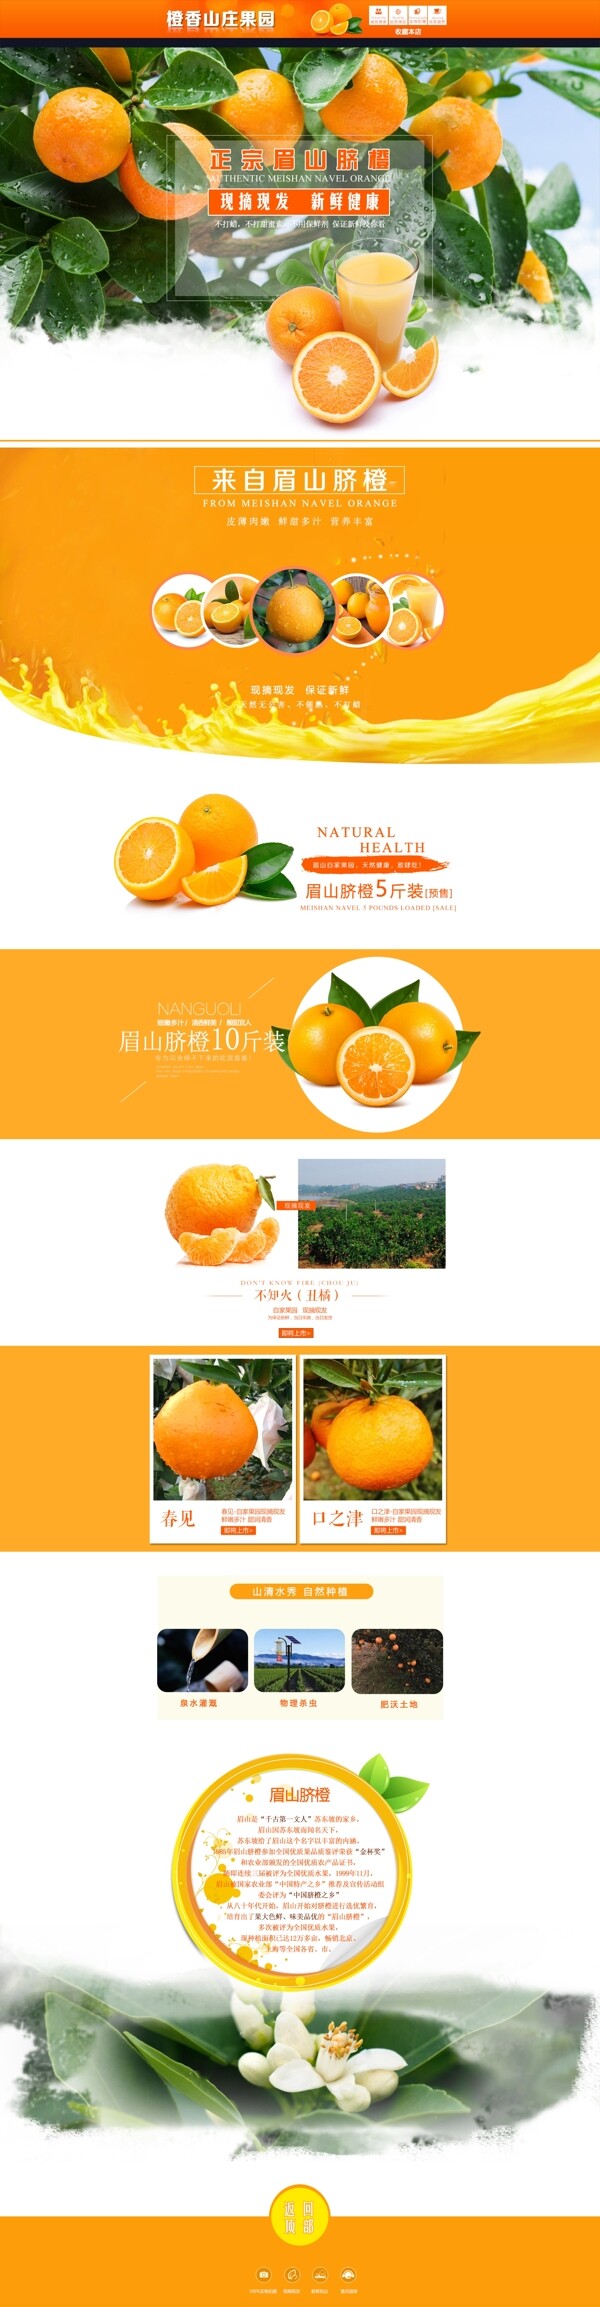 脐橙首页淘宝电商水果